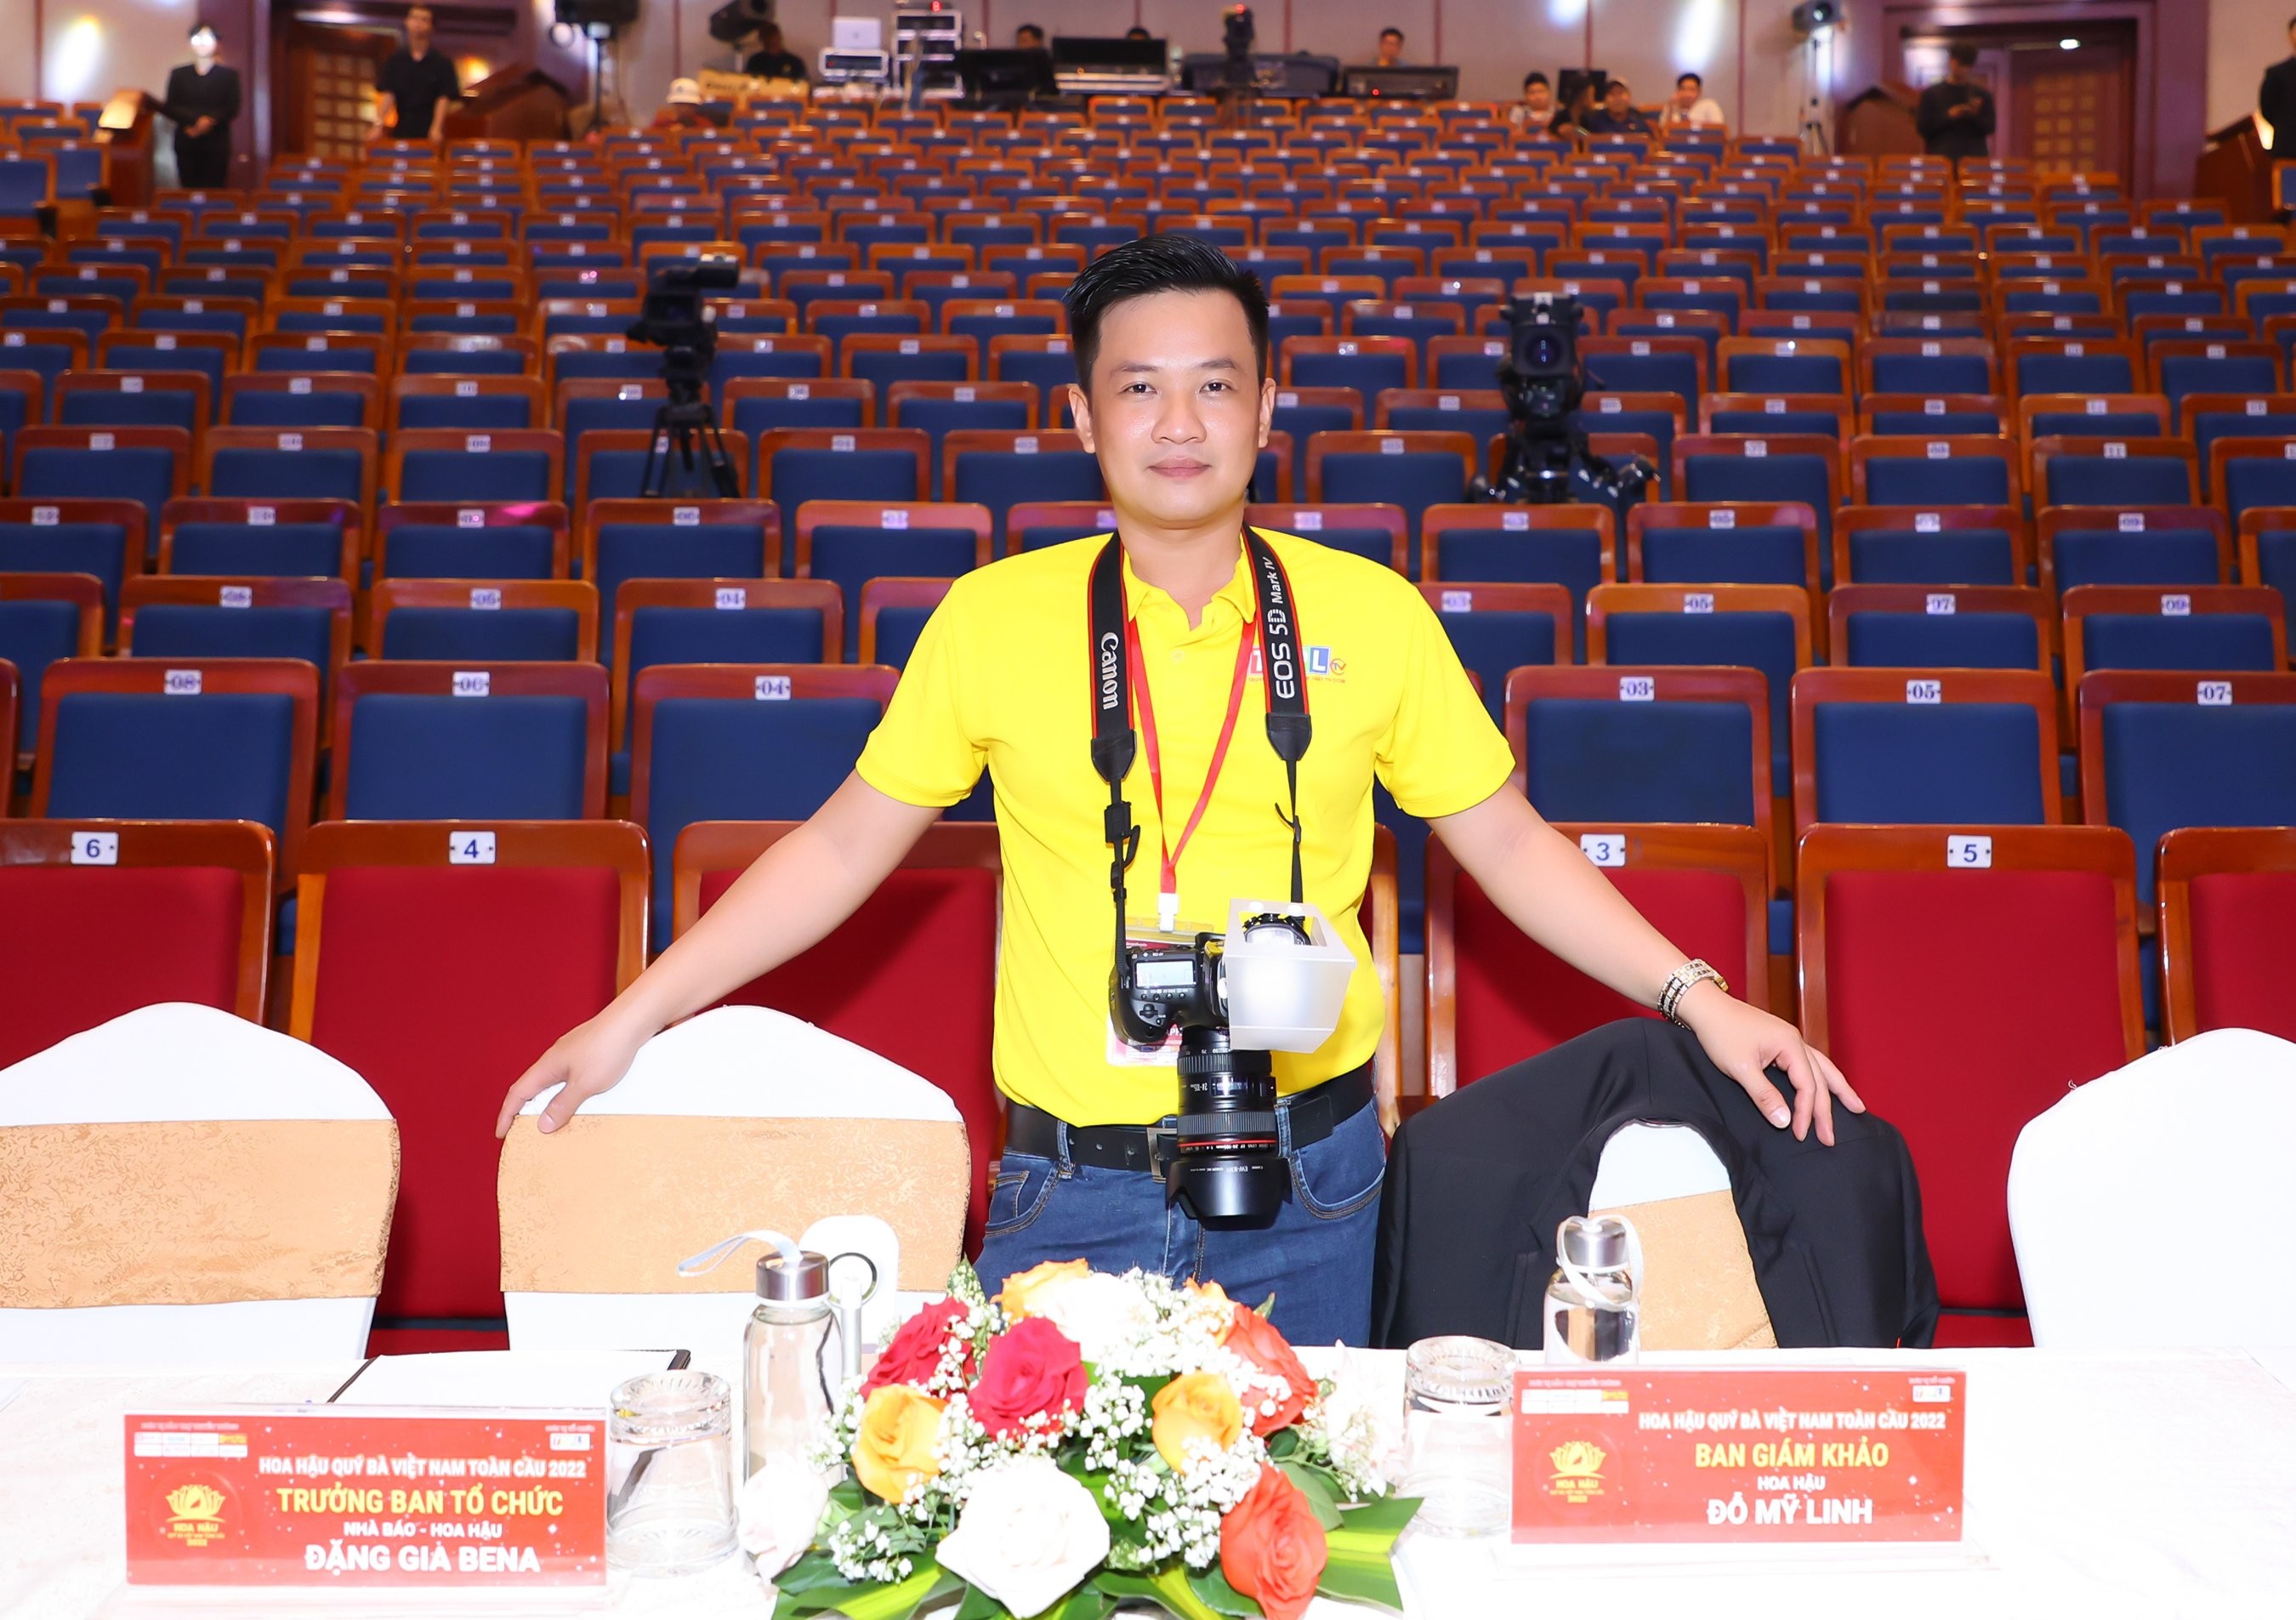 Photo Quang Nguyễn – Nhà tài trợ hình ảnh cho cuộc thi Hoa hậu Doanh nhân Việt nam Toàn cầu